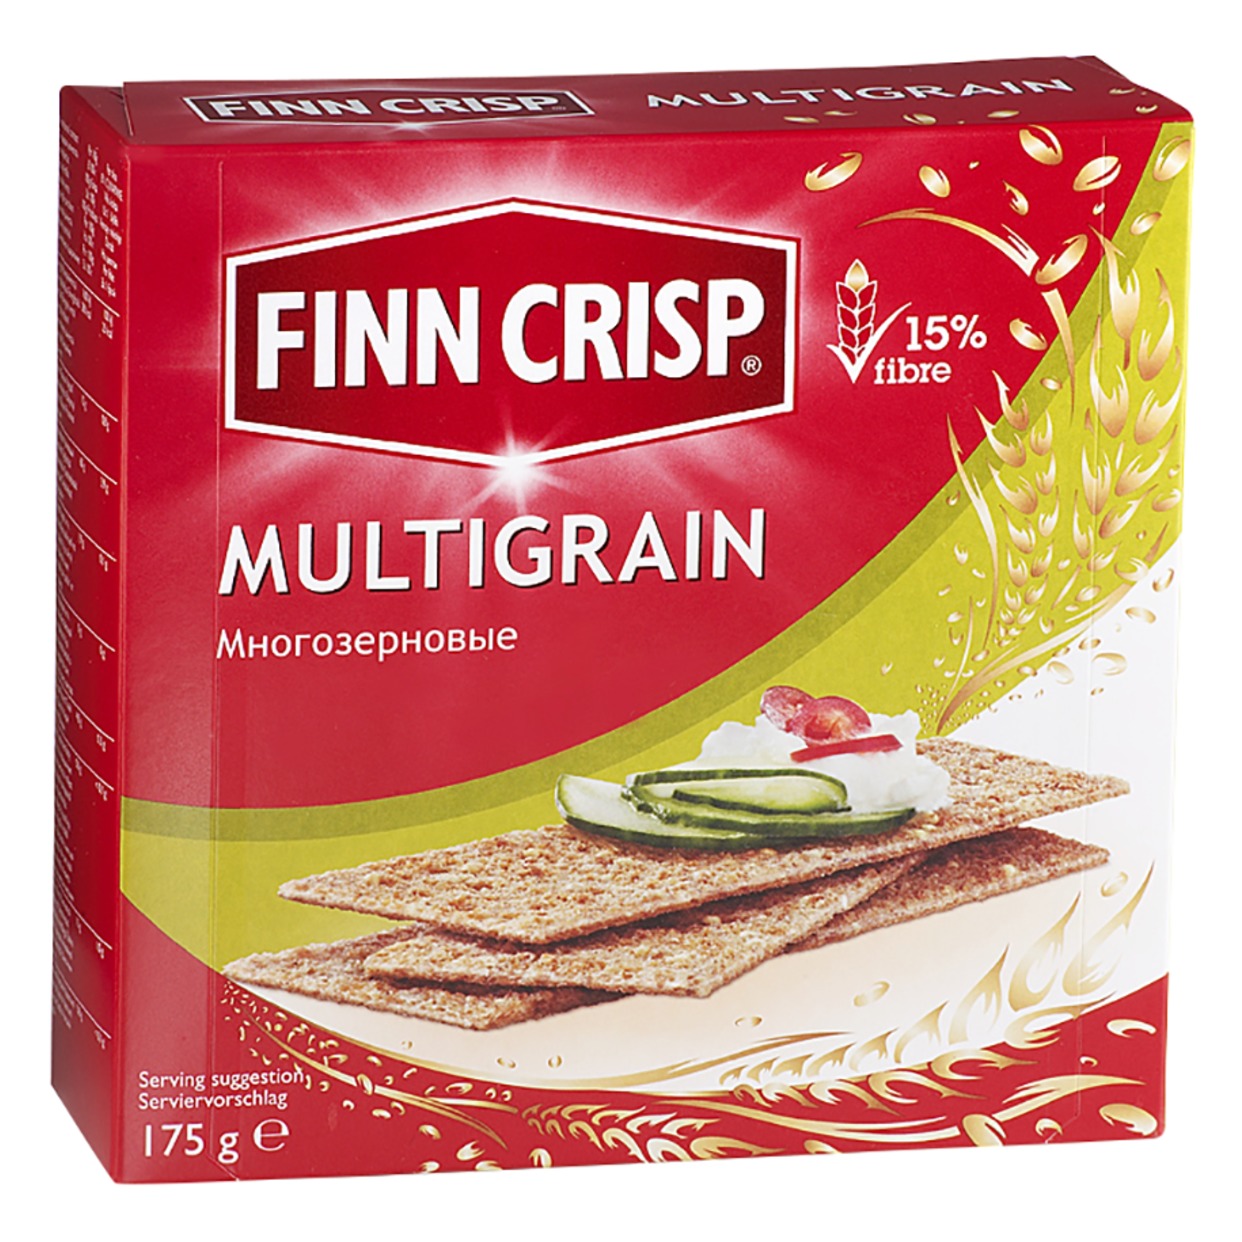 Сухарики Finn Crisp Multigrain, Многозерновые, 175 г по акции в Пятерочке